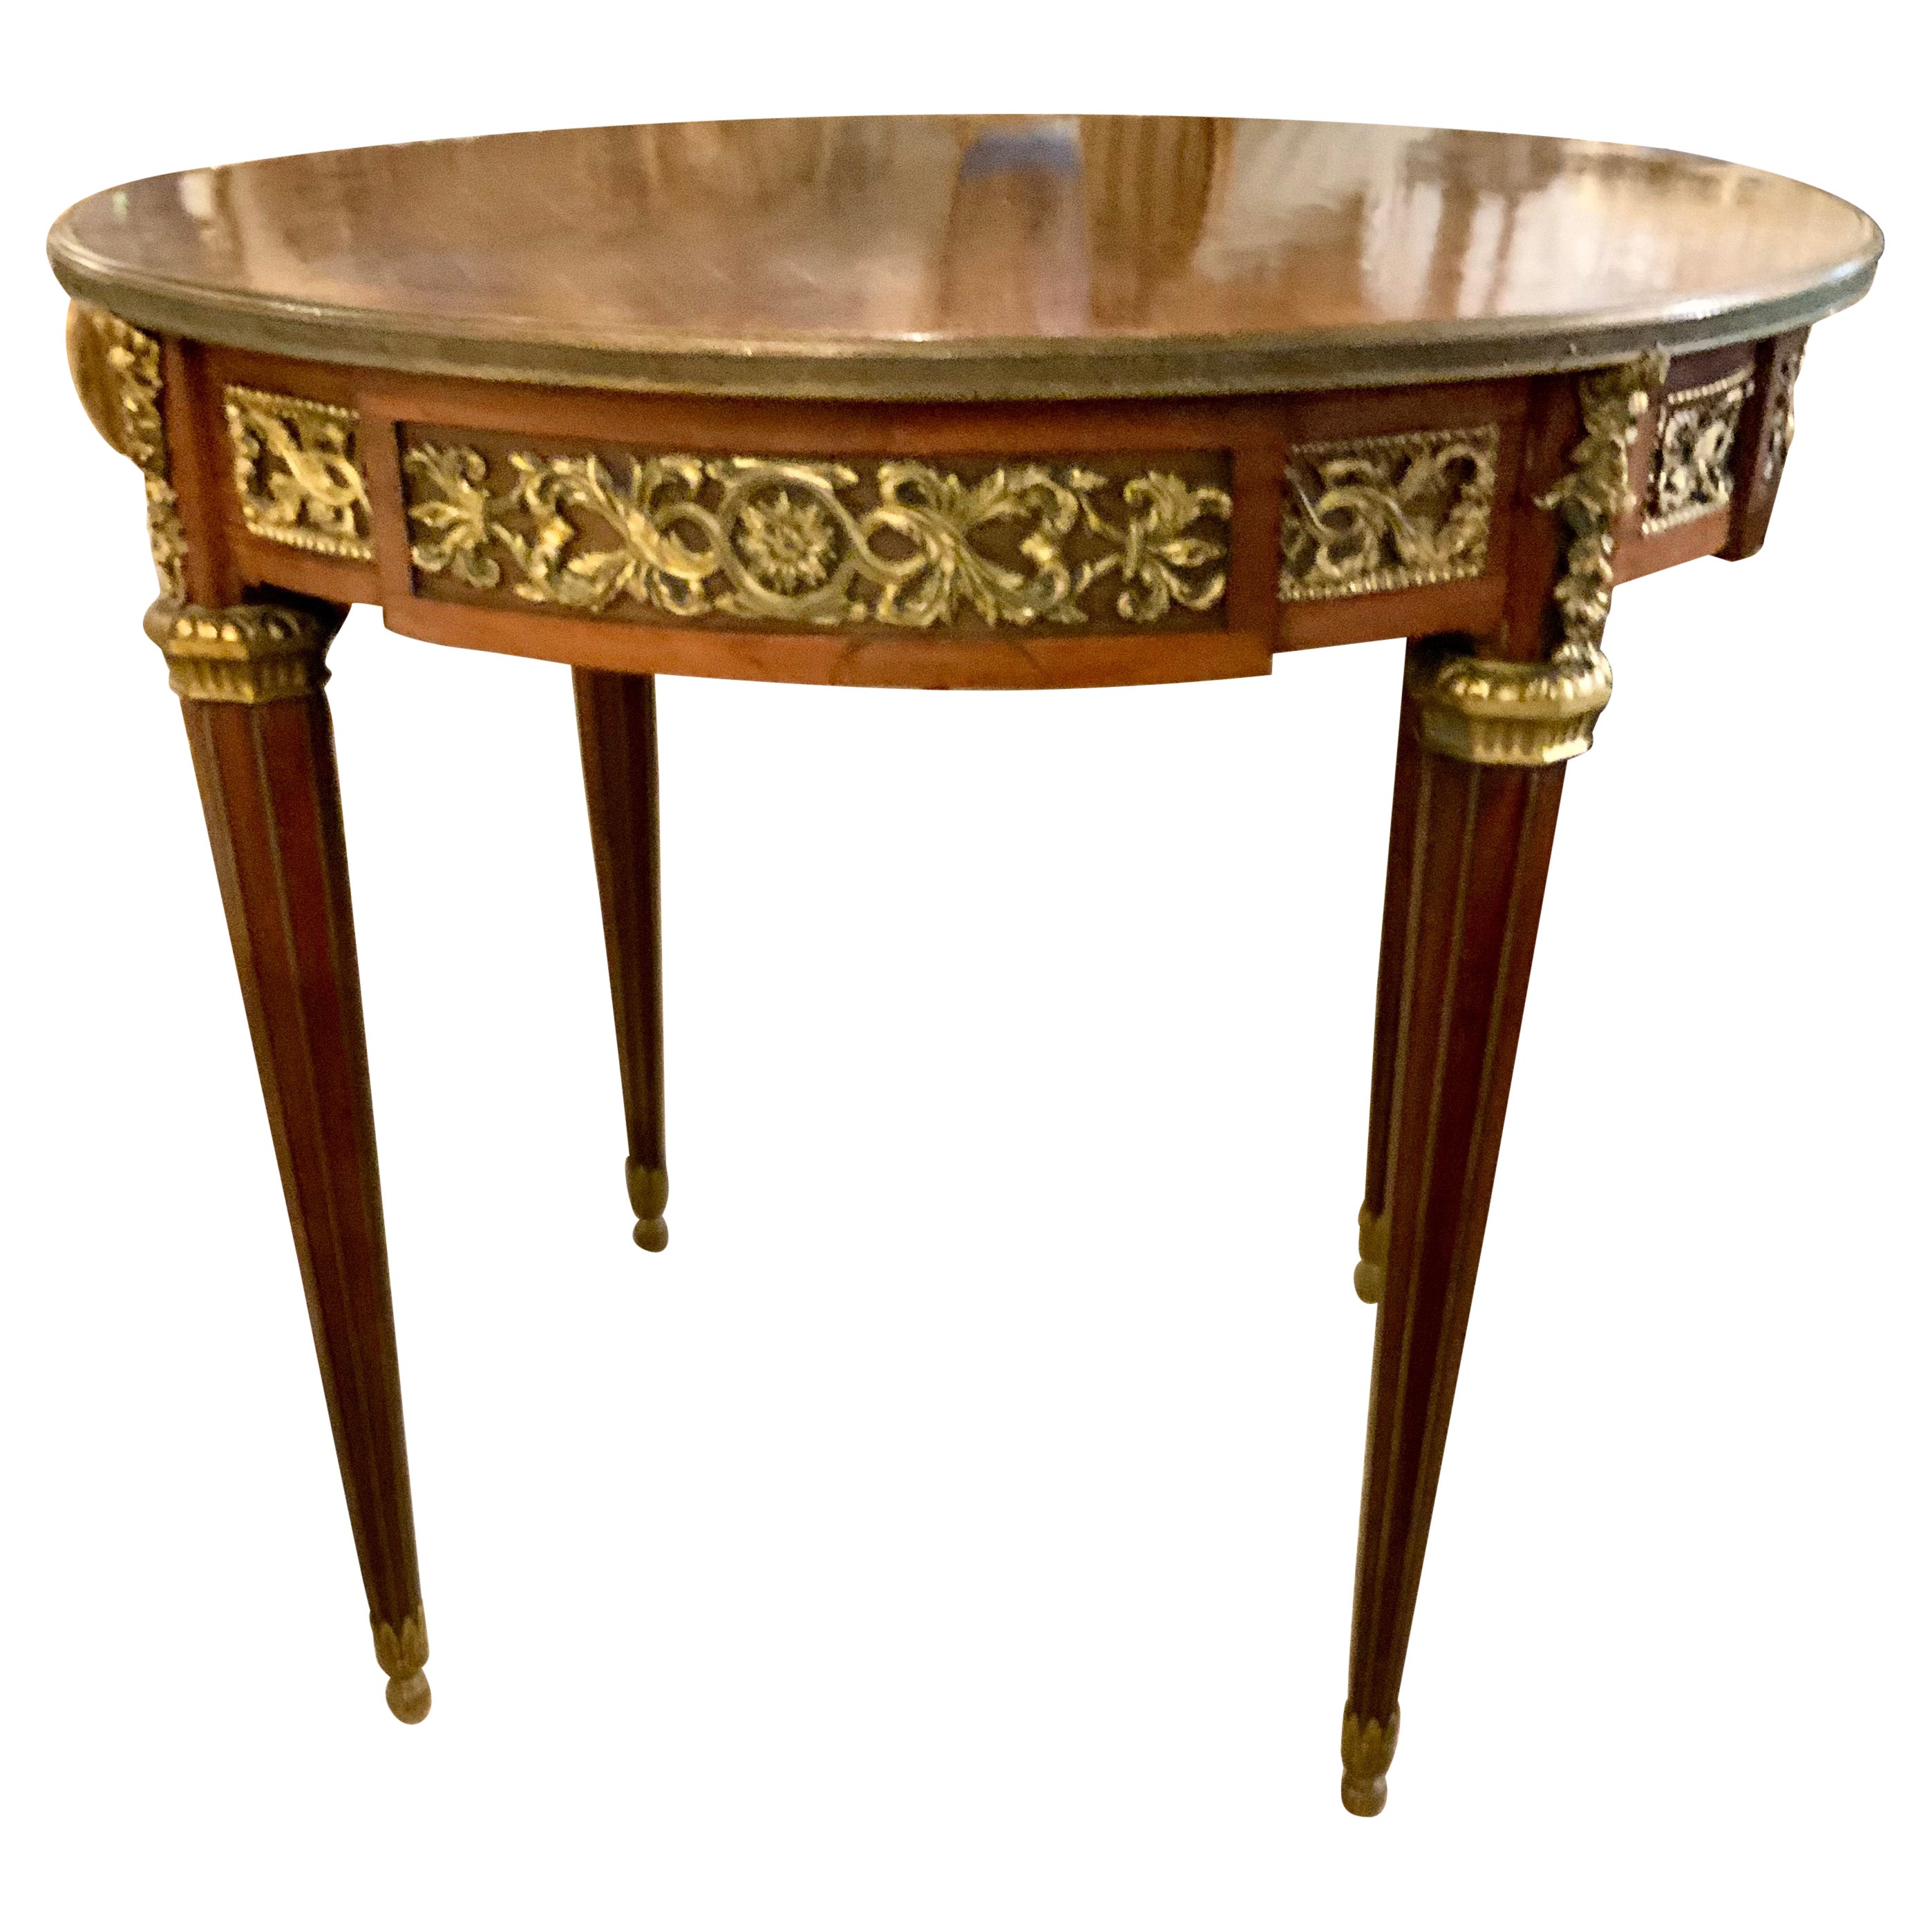 Table centrale de style Louis XVI en bois de violette avec montures en bronze doré